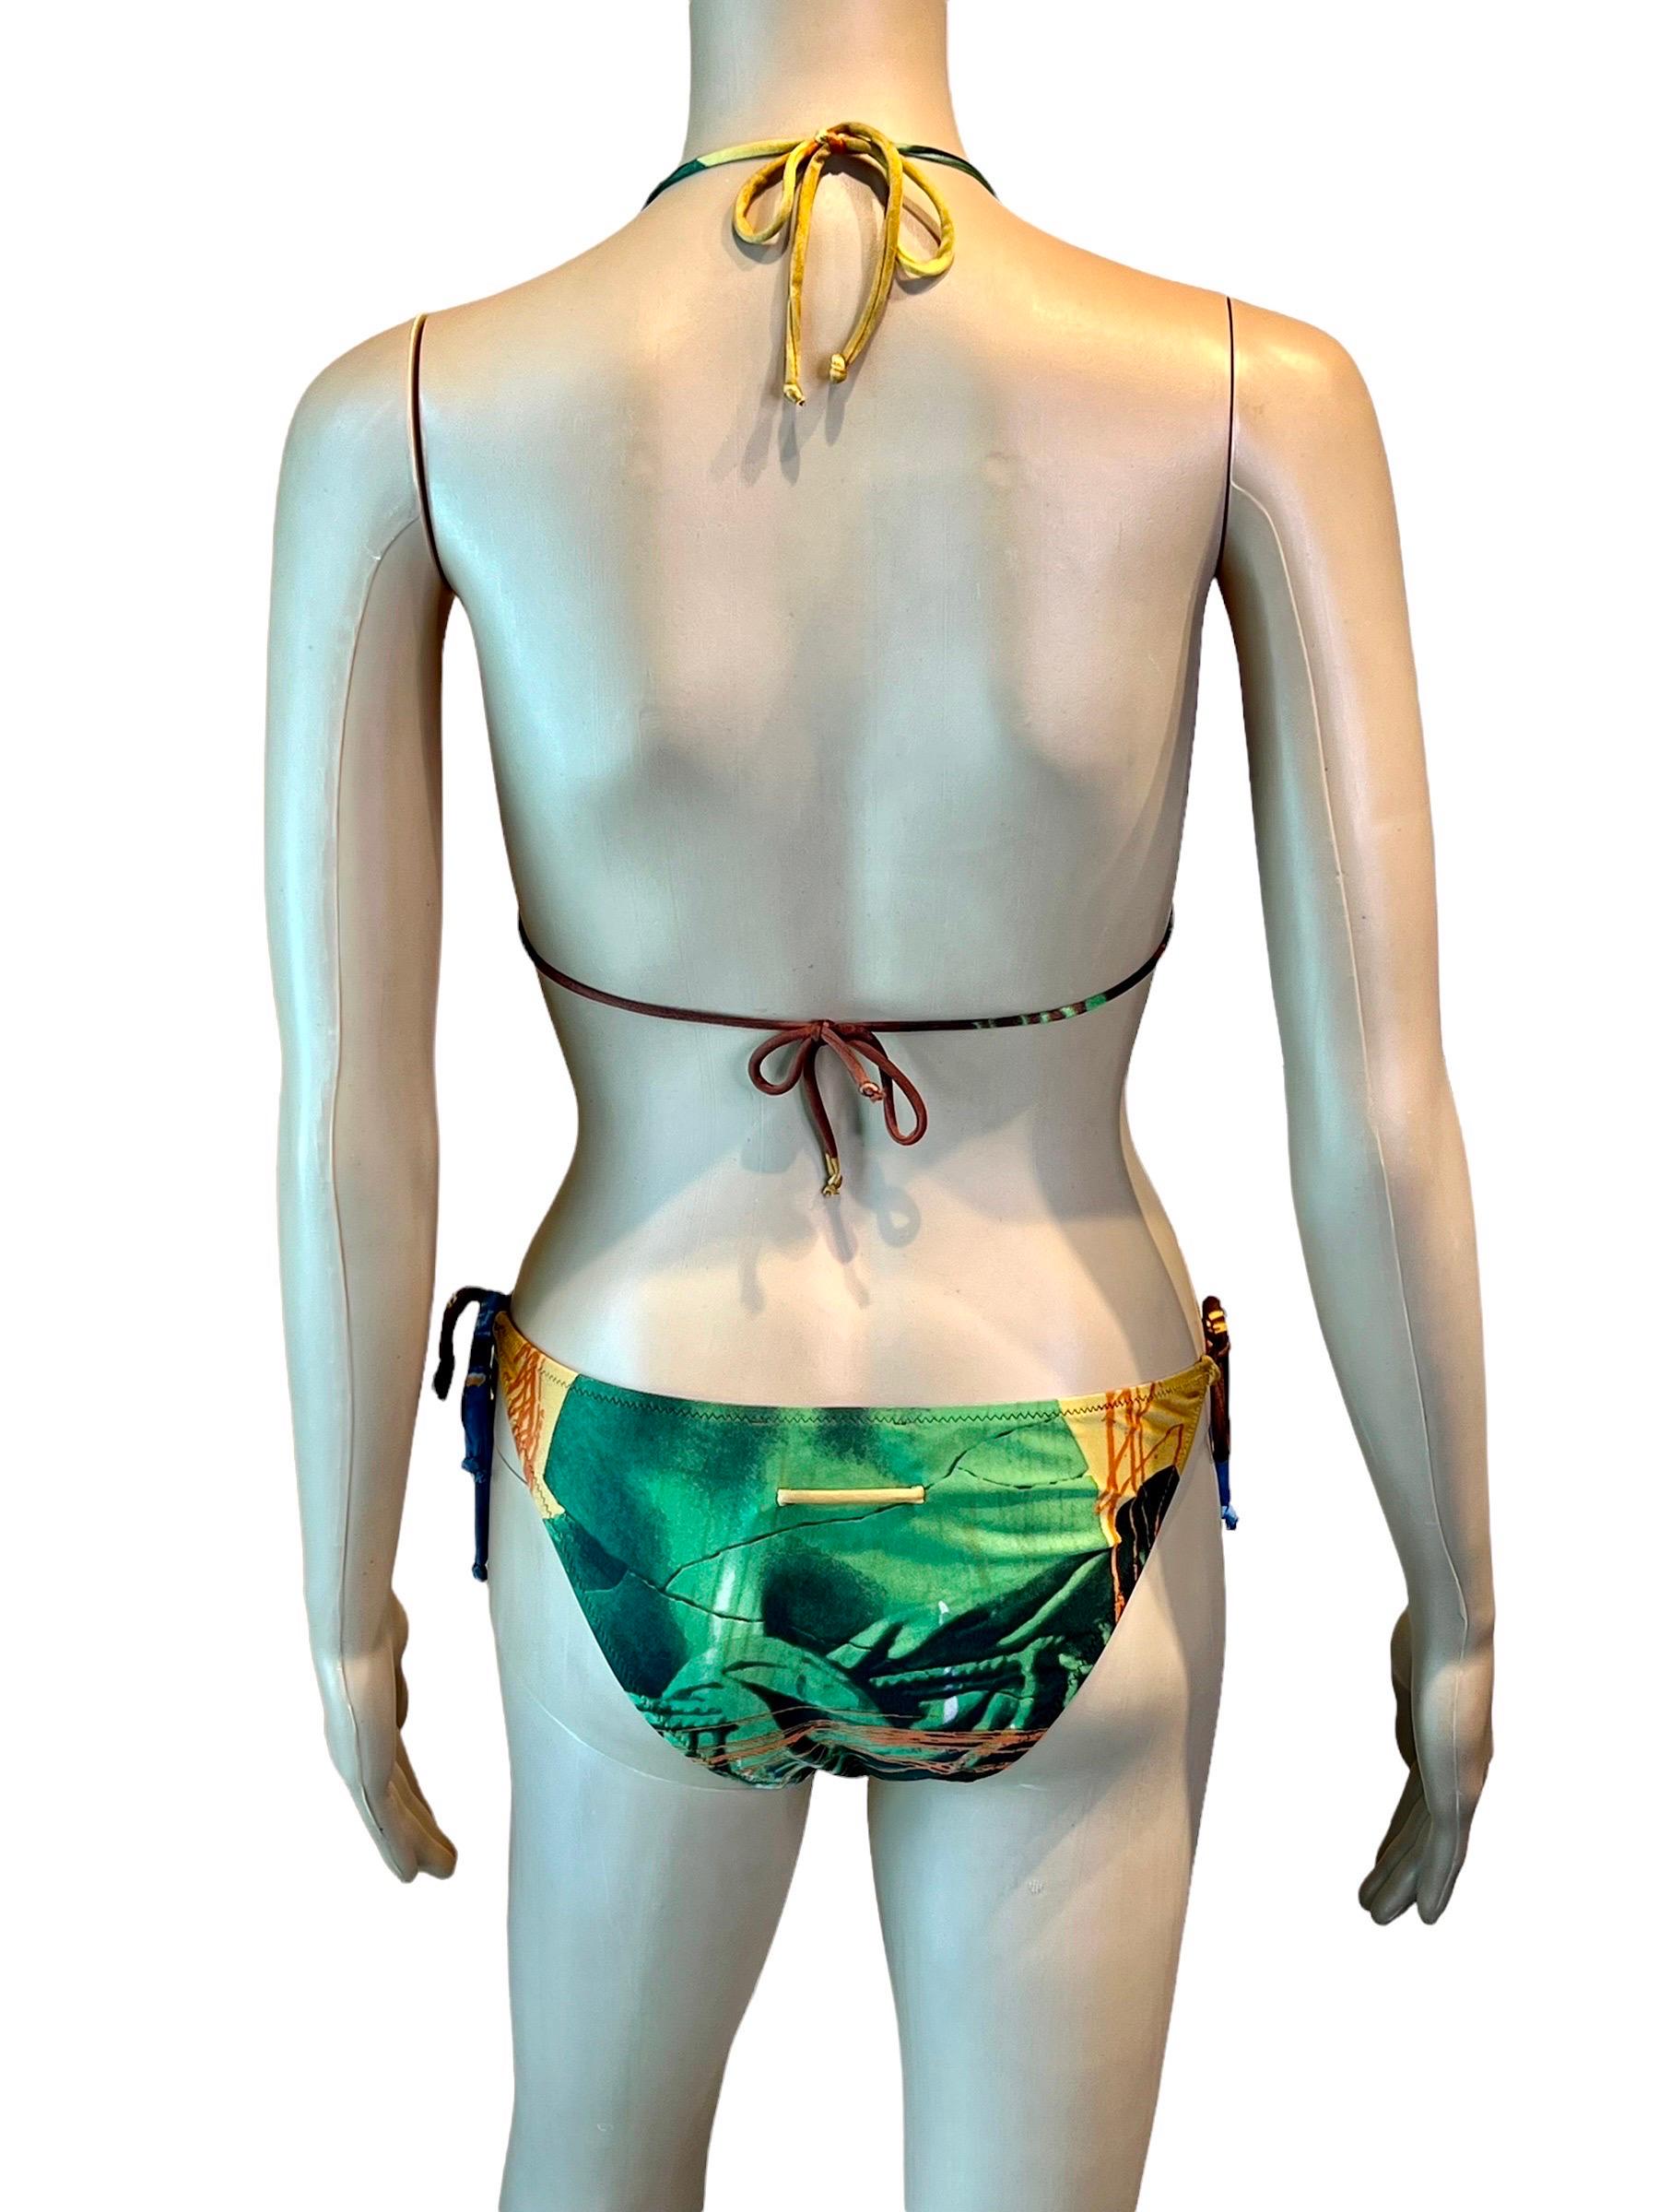 Jean Paul Gaultier S/S 1999 Venus de Milo Bikini Swimwear Swimsuit 2 Piece Set For Sale 1